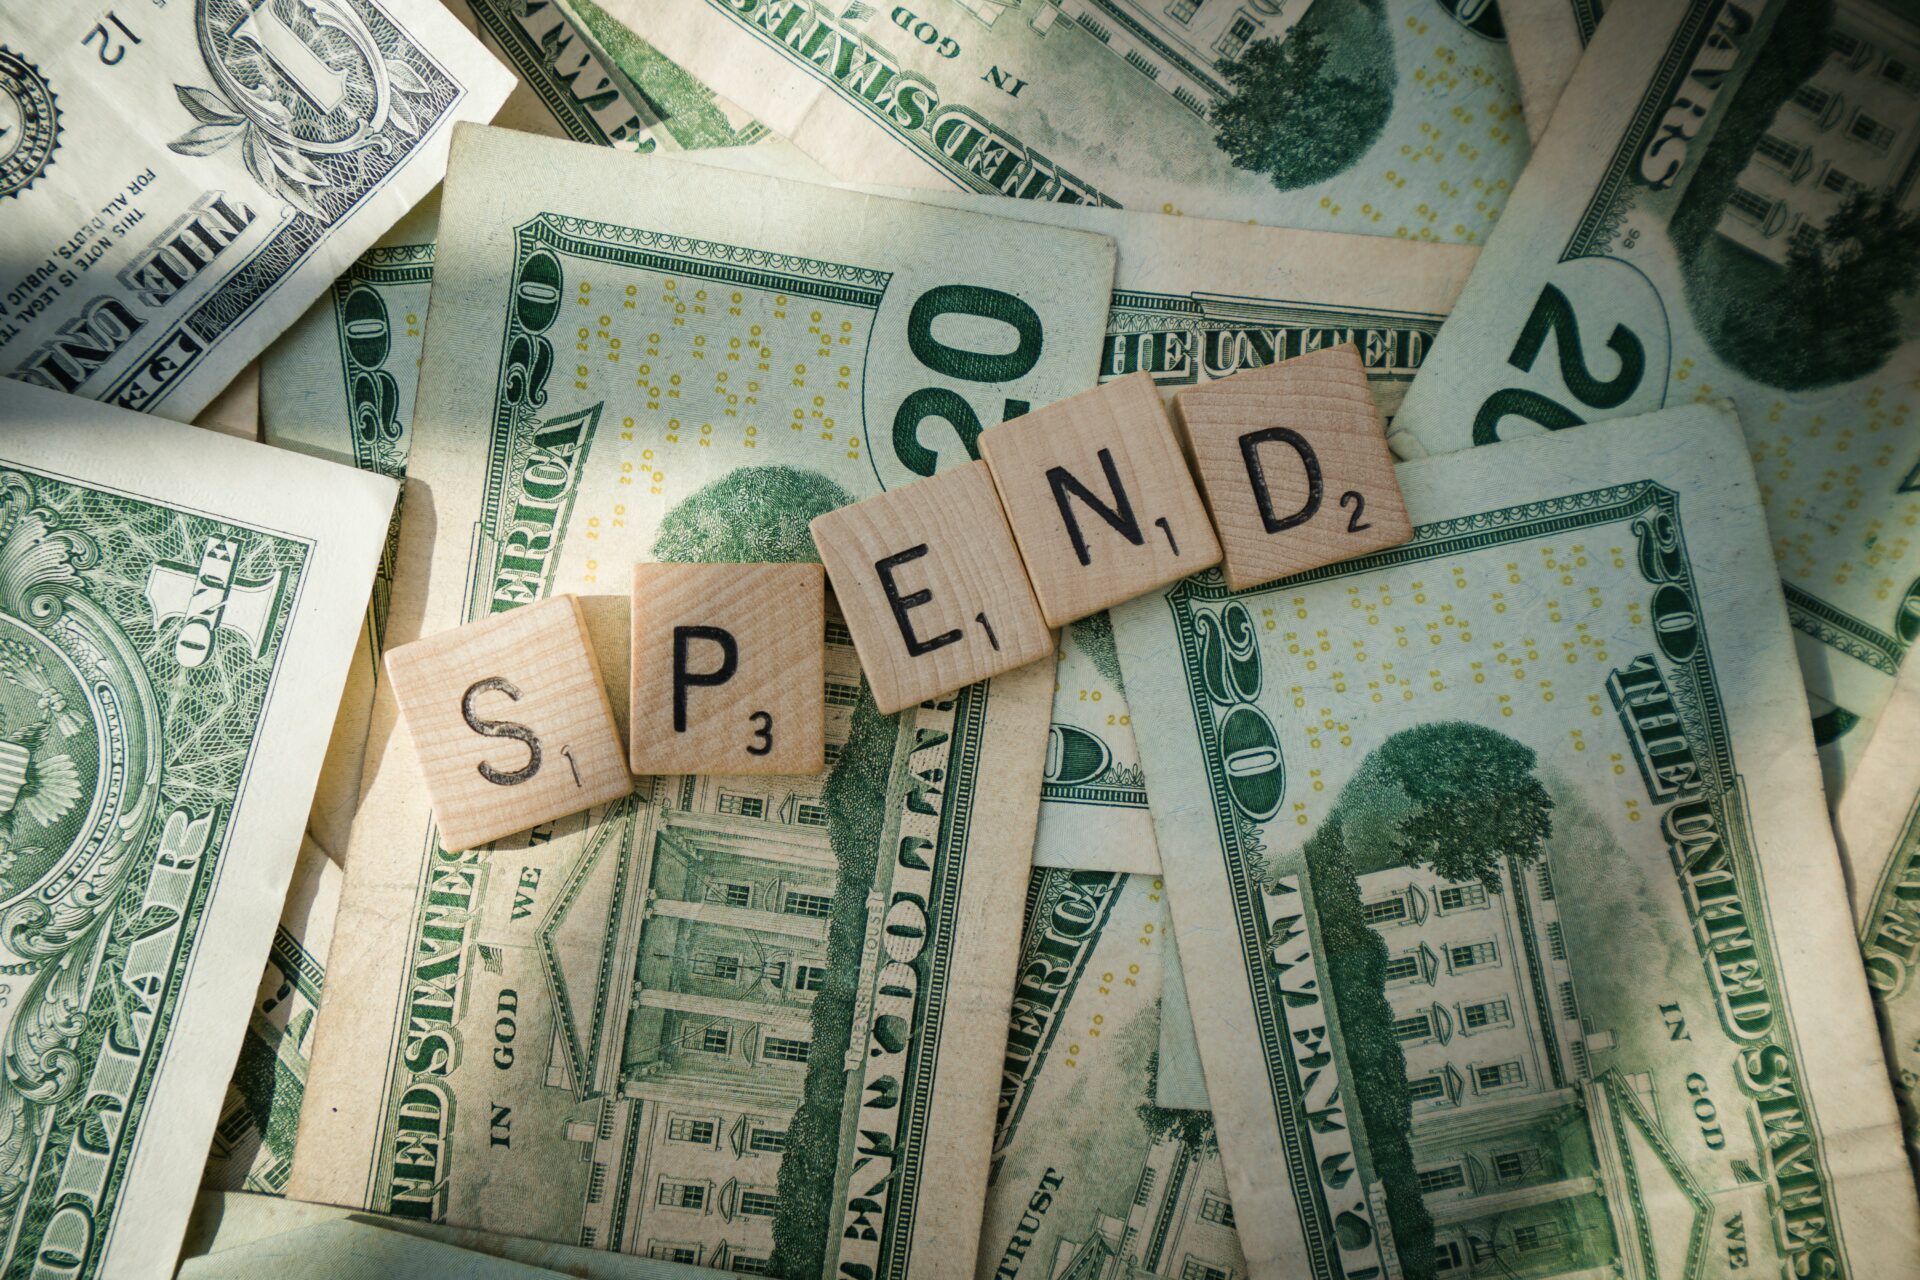 Scrabble letters spelling 'spend' on American bills